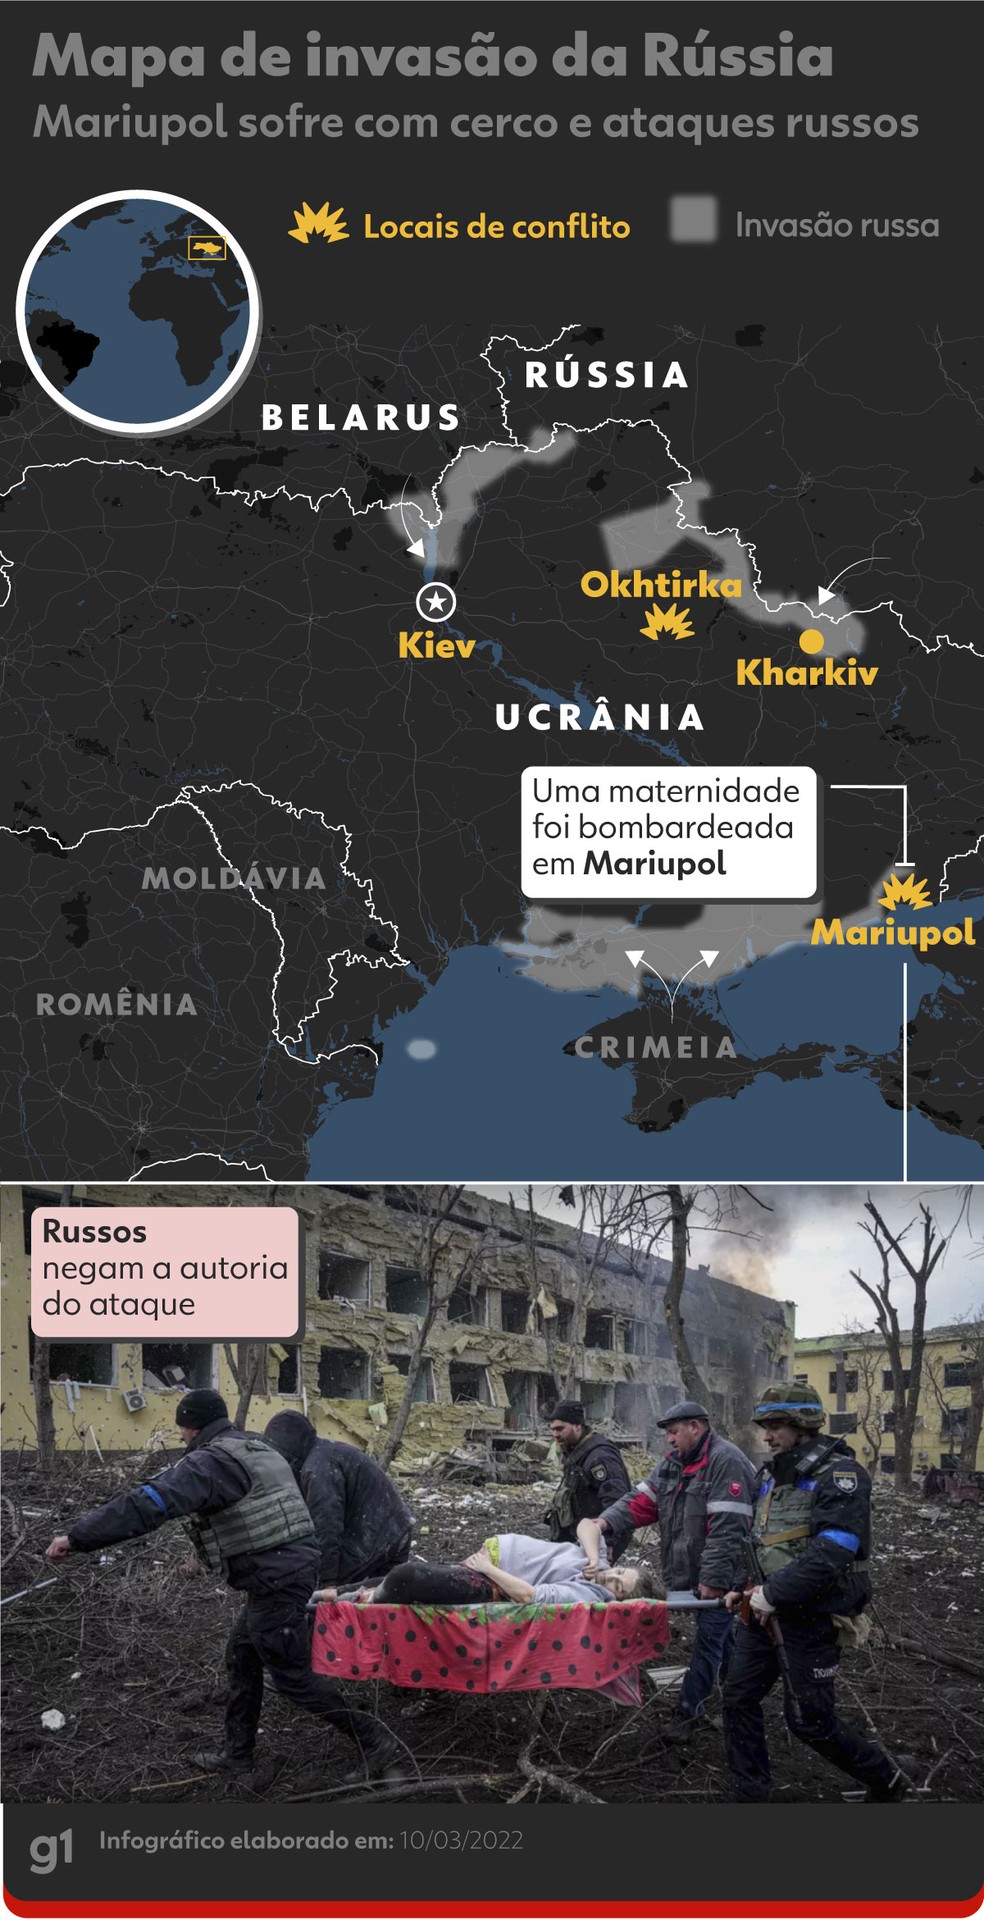 Ucrânia: Uma guerra a leste e a pergunta que os russos não podem fazer